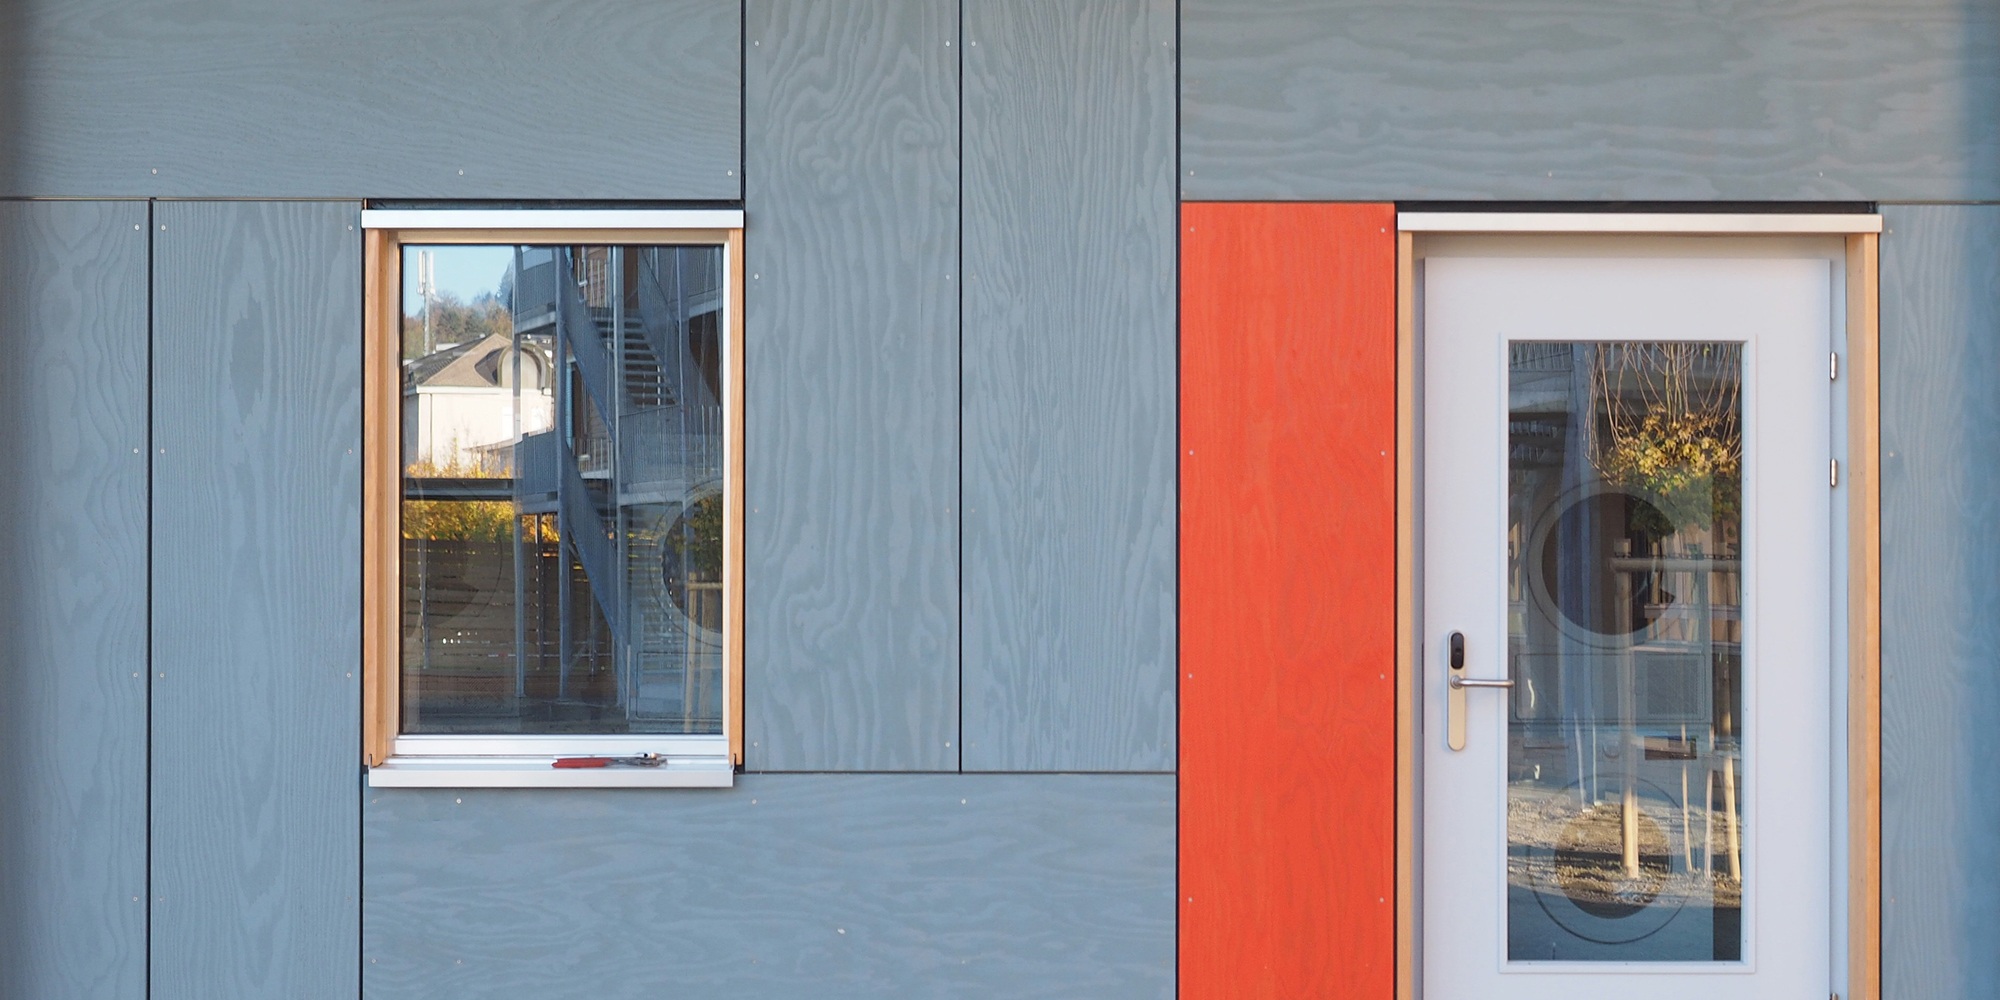 Aufnahme der grau sowie rot gefärbten Fassade von Asylzentrum Grosshof mit Grossansicht von Fenster und Türe